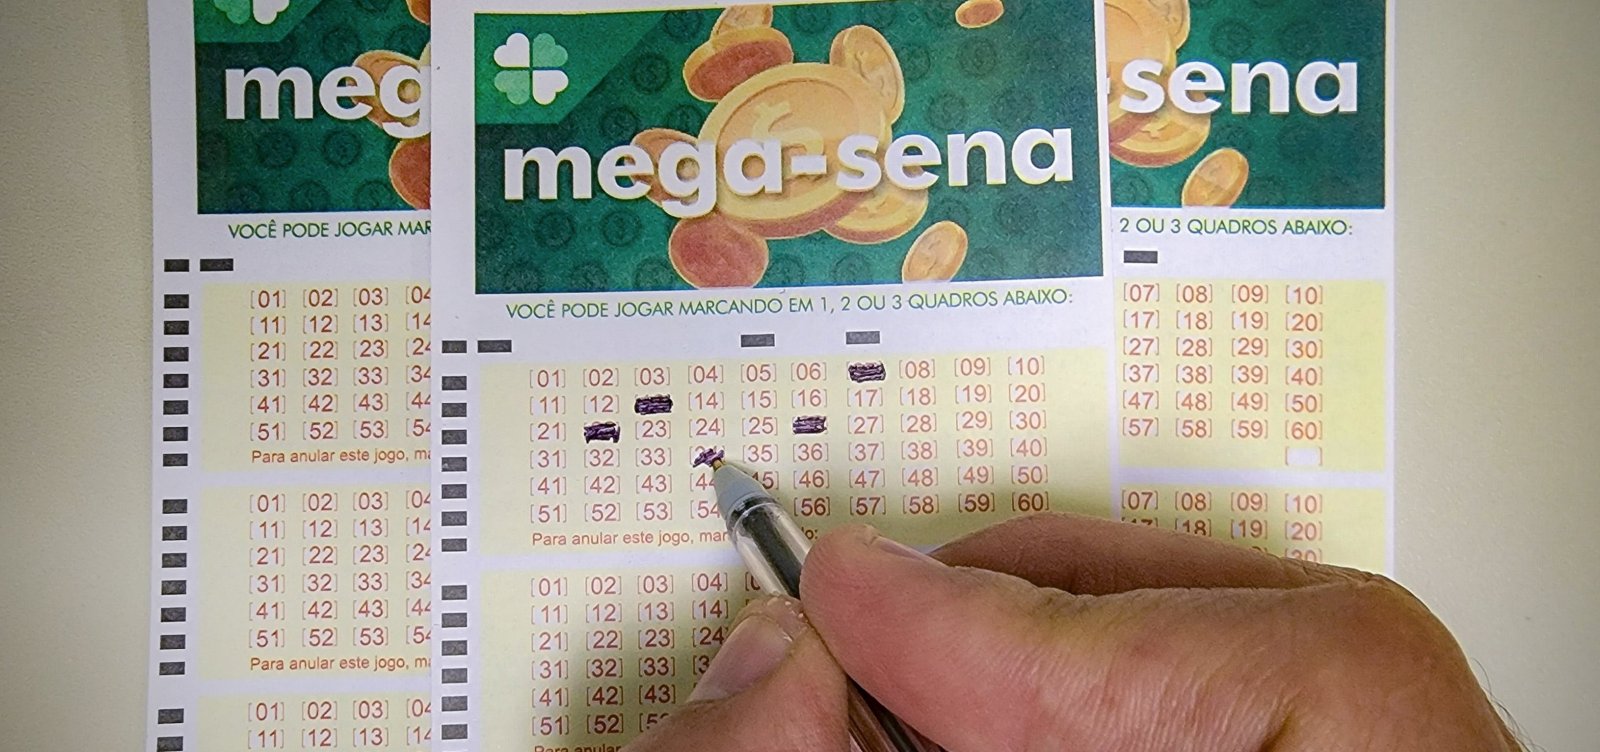 Mega-Sena acumula e próximo concurso deve pagar R$ 58 milhões